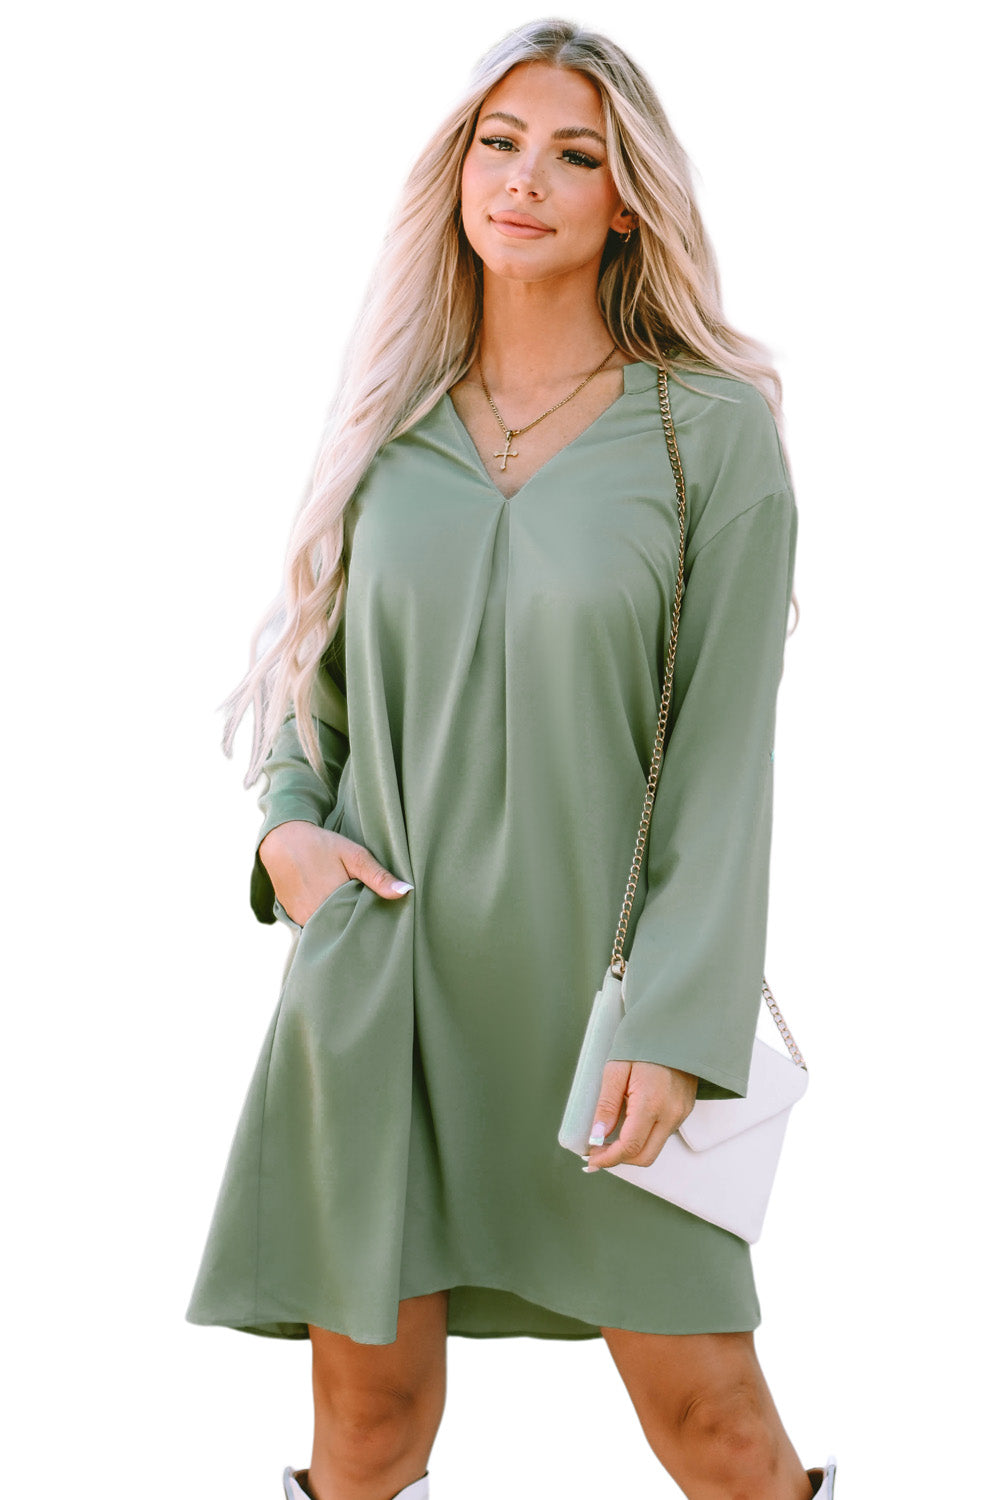 Green Roll-tab Sleeve Flowy Casual Dress